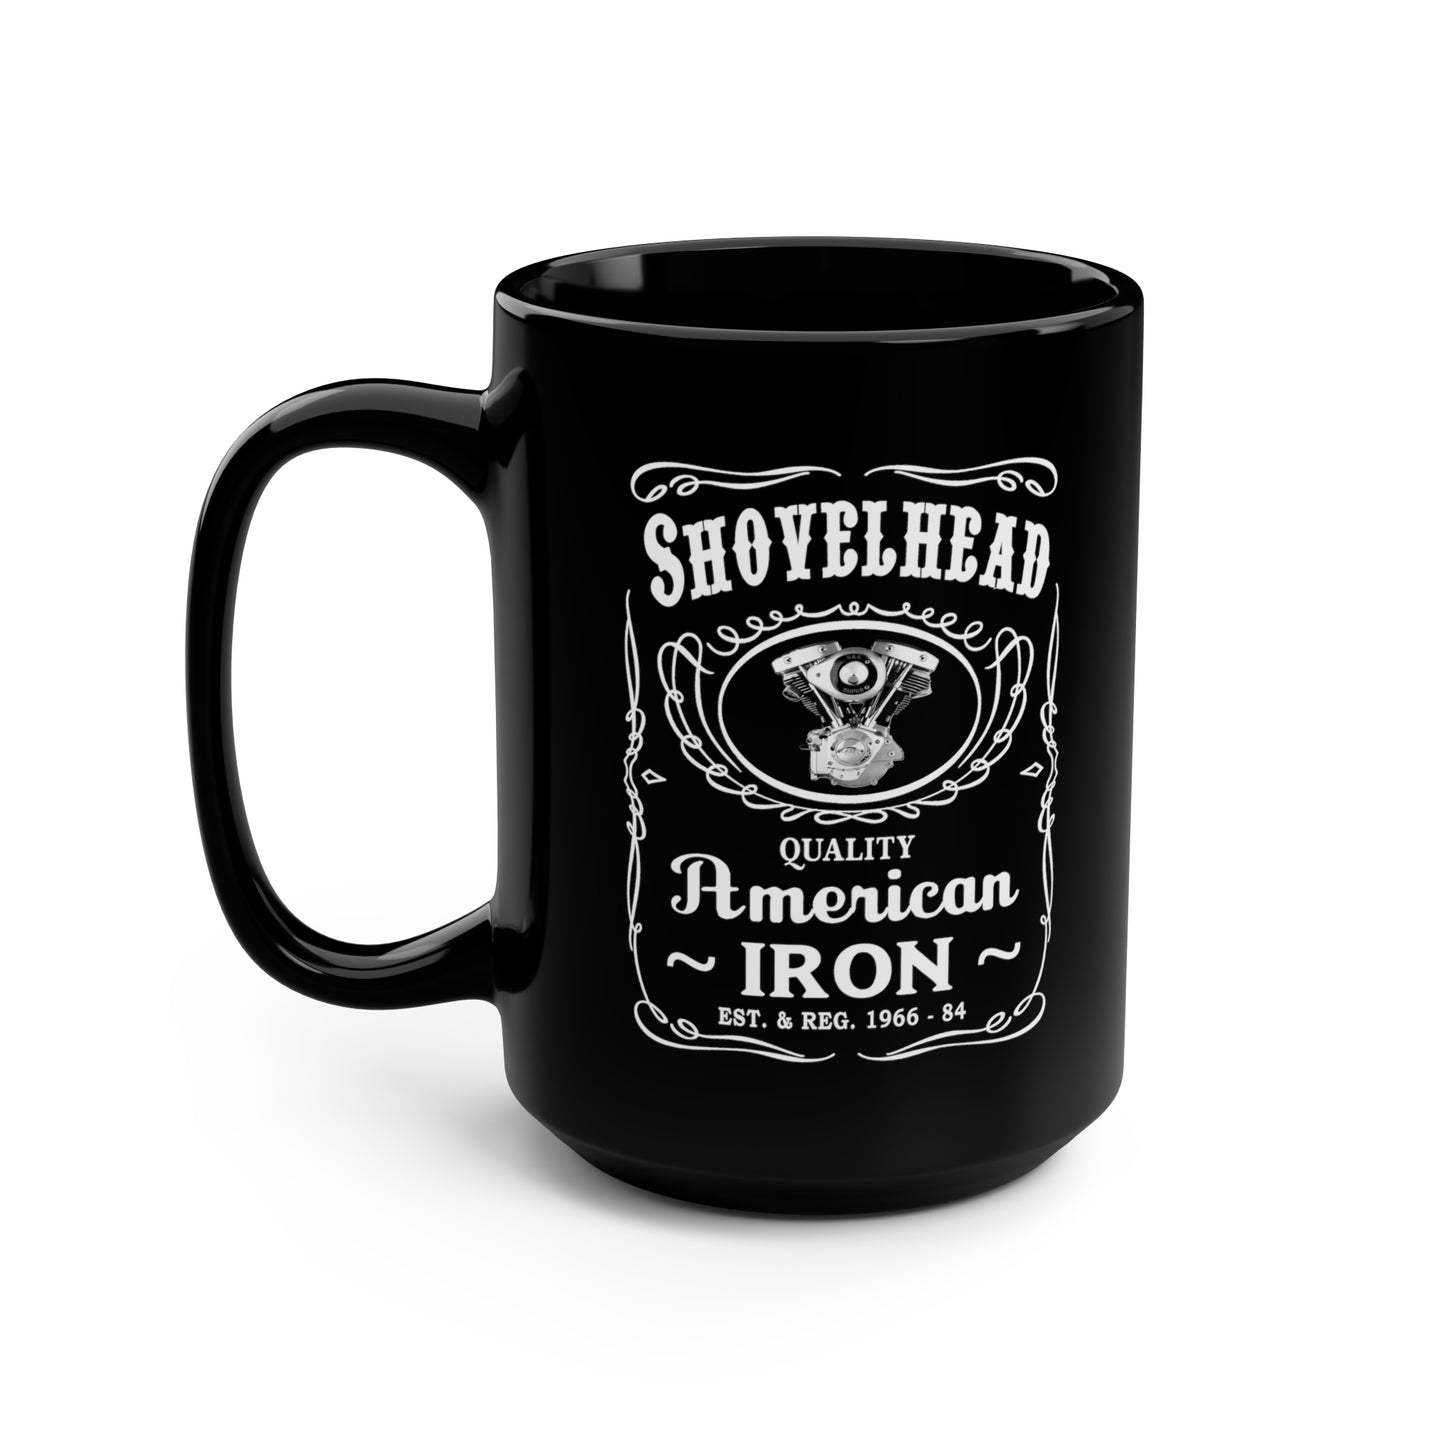 SHOVELHEAD 3 (JD CONE) Black Mug, 15oz